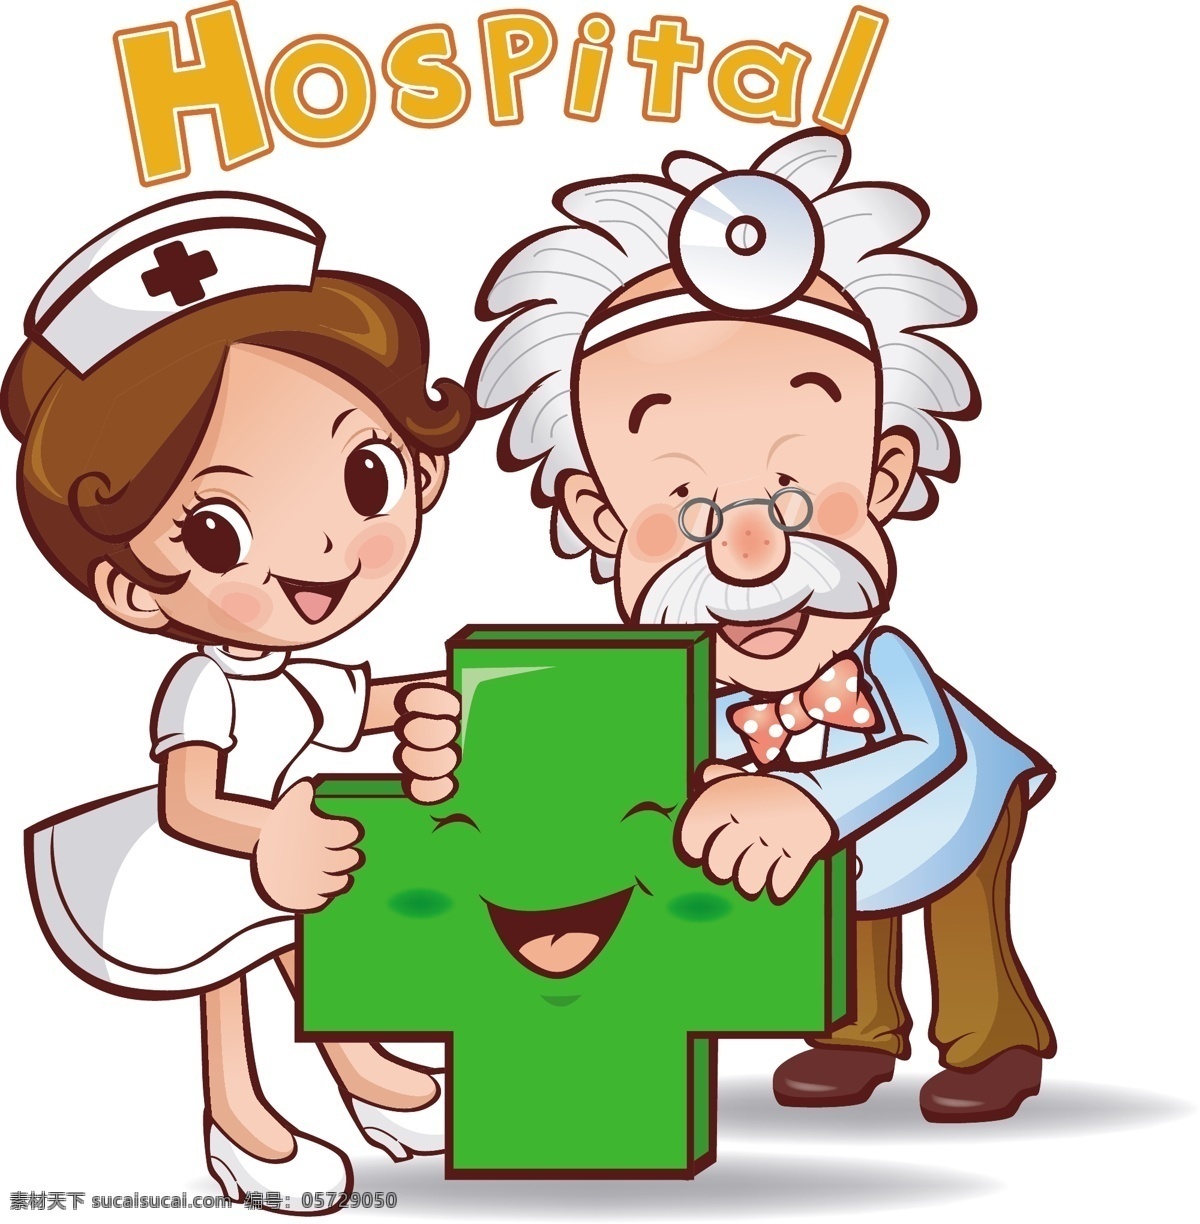 医生 小护士 卡通 动漫 插画 医院 医护人员 可爱小护士 和谐 友善 十字标志 动漫动画 动漫人物